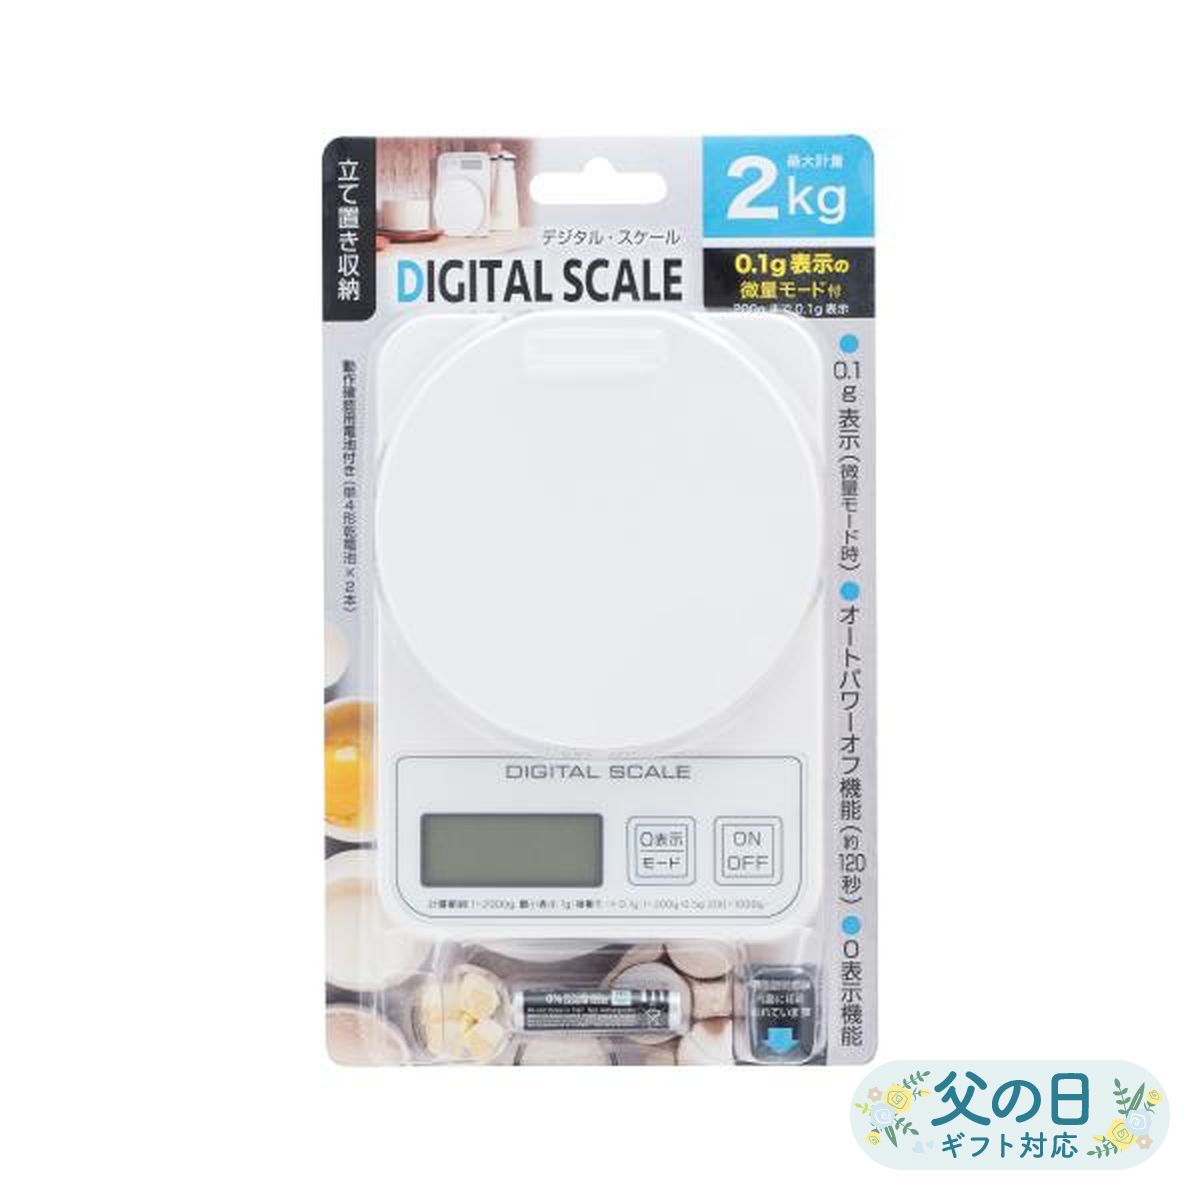 デジタルスケール 2kg 微量モード0.1g対応 キッチン クッキング スケール 秤 はかり 風袋切り 0表示 縦置き可能 ADS-2200 1g〜200g ホワイト ADS-2200